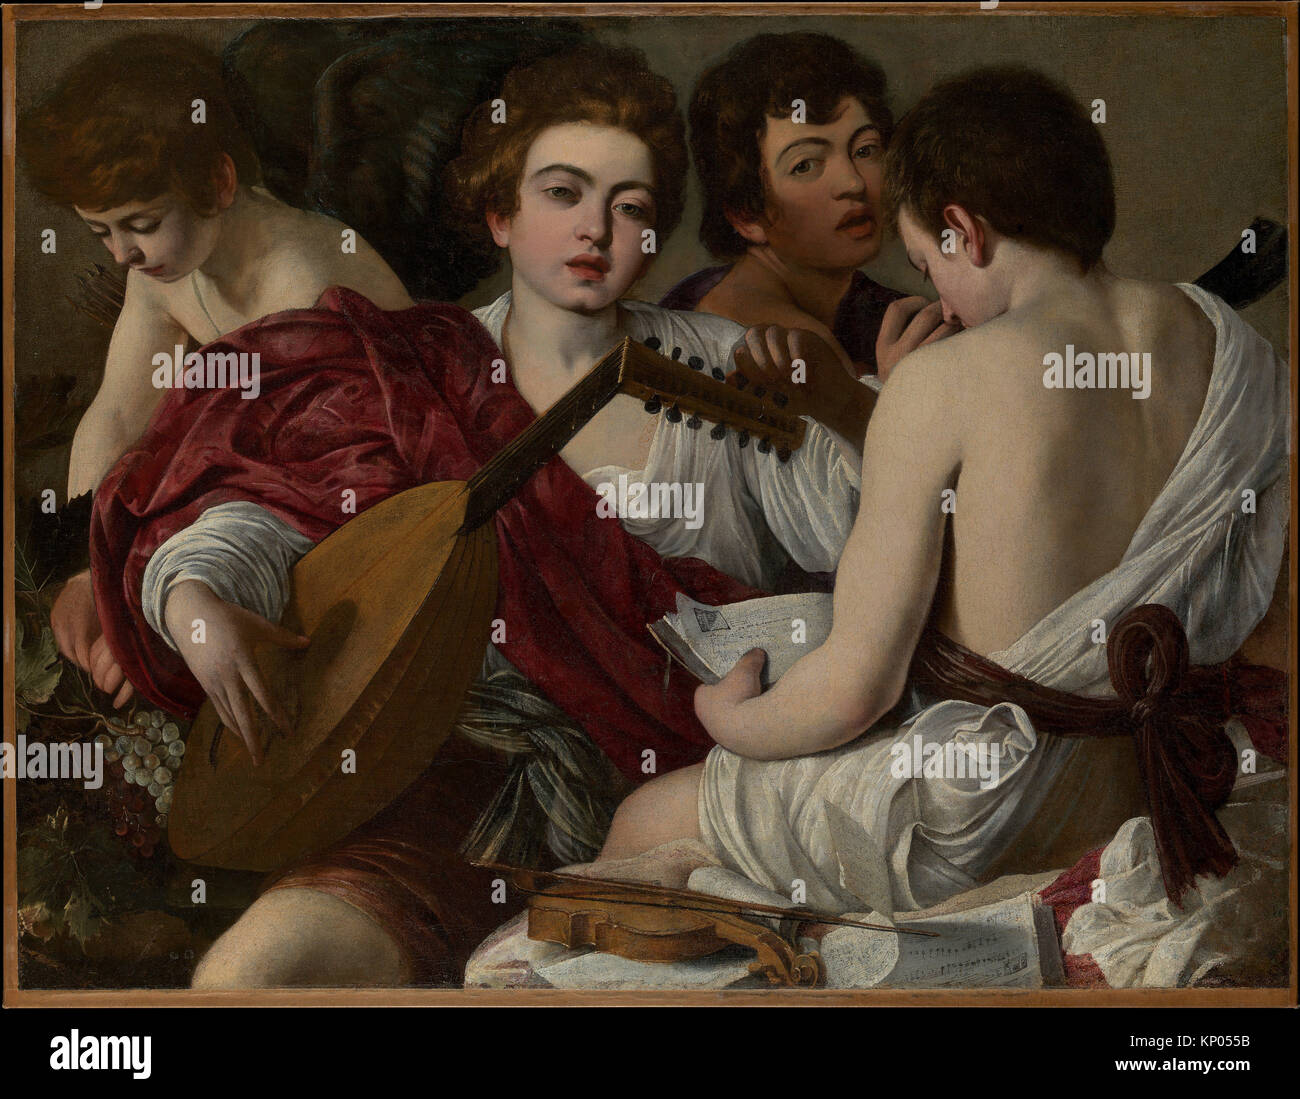 Los músicos. Artista: Caravaggio (Michelangelo Merisi) (italiano, Milán o Caravaggio 1571-1610 Porto Ercole); Fecha: ca. 1595; media: Óleo sobre lienzo. Foto de stock